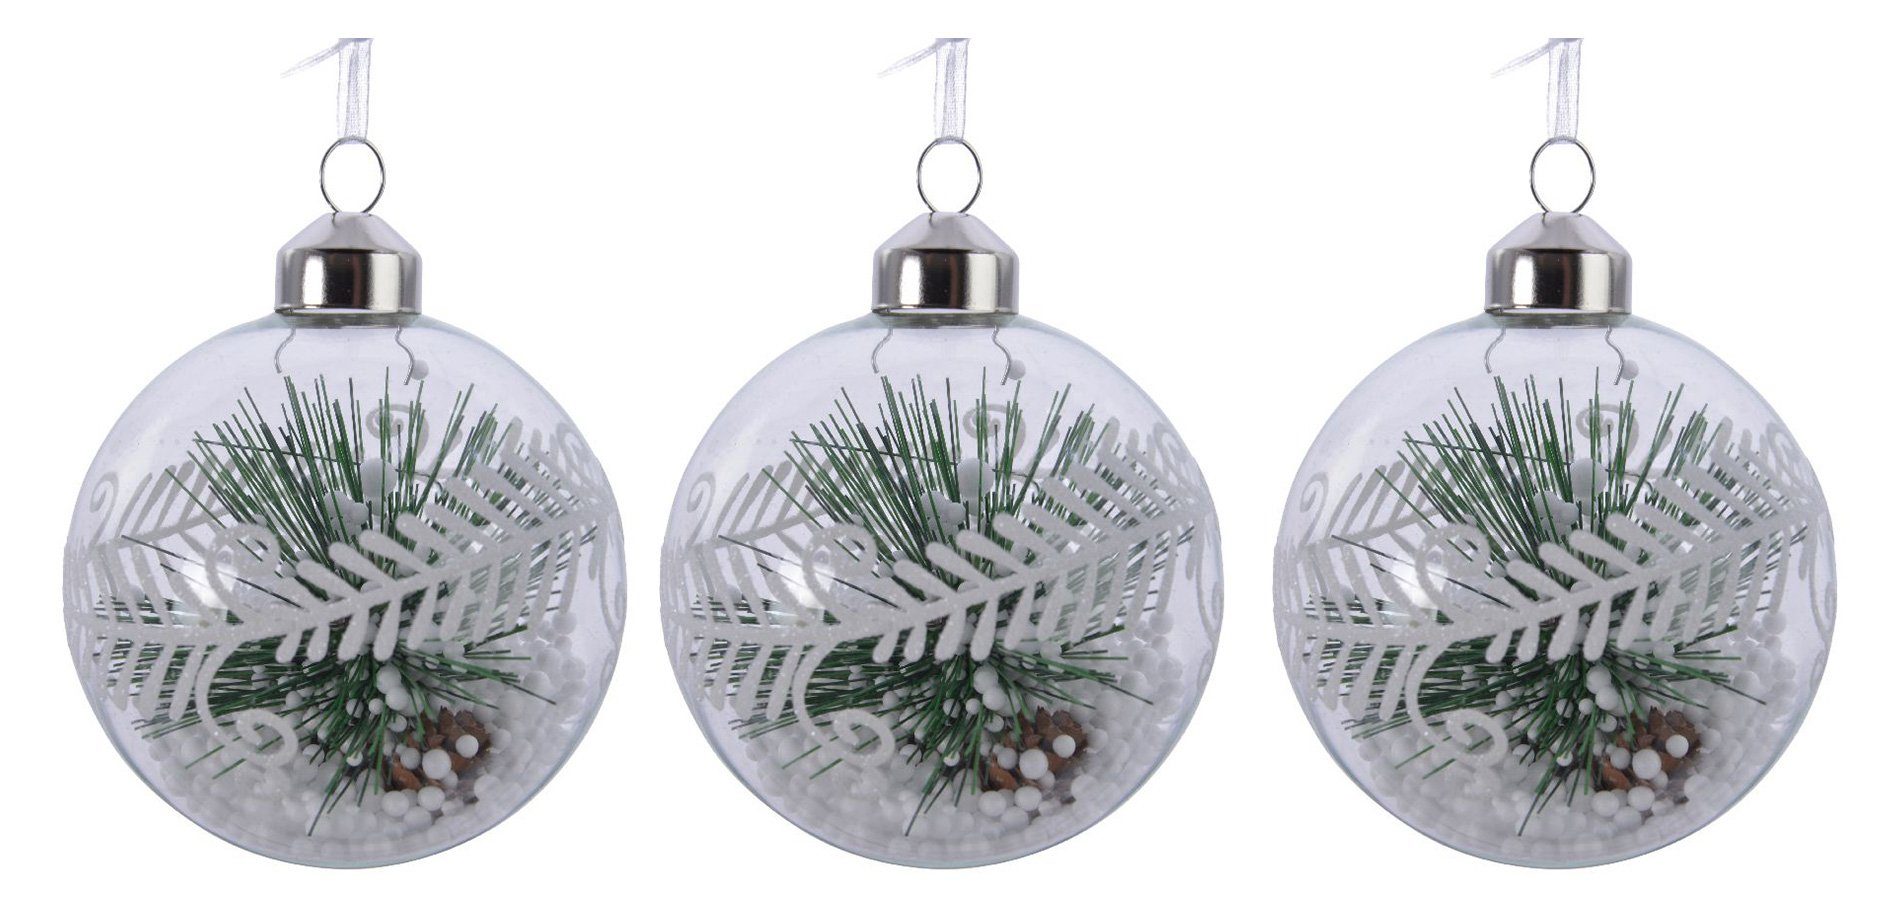 Tannenzweig mit Stück Glas 3 decorations Weihnachtskugeln Christbaumschmuck, gefüllt season 8cm, Decoris